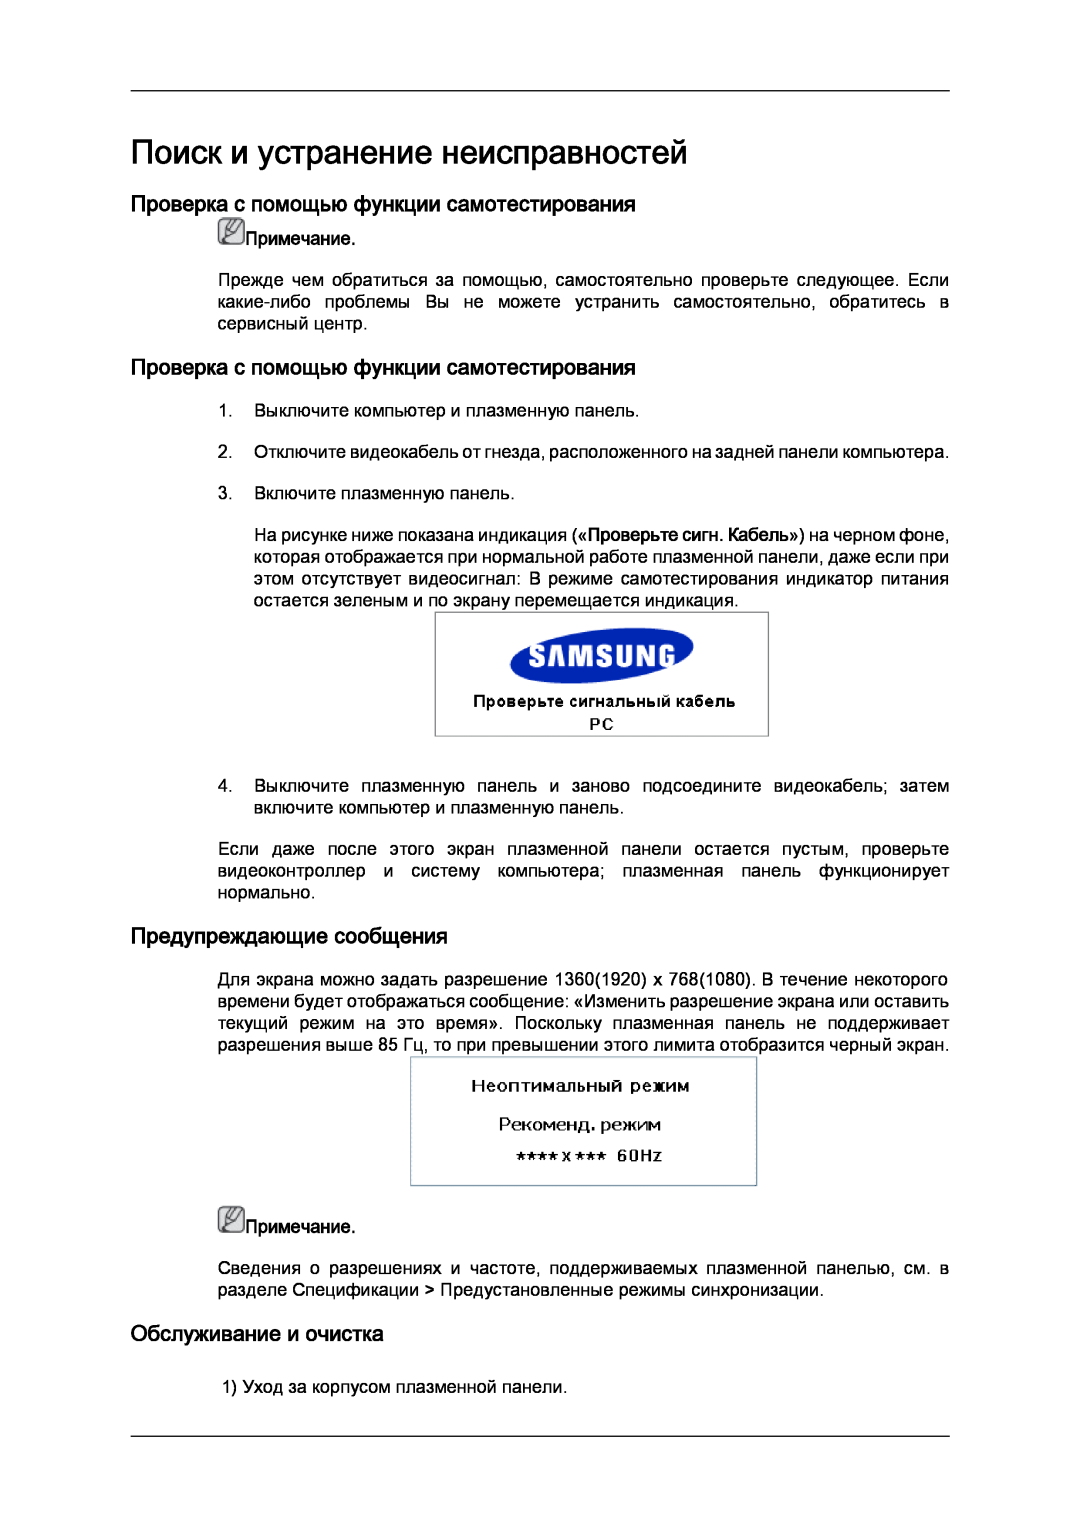 Samsung PH63KPFLBF/EN manual Поиск и устранение неисправностей, Проверка с помощью функции самотестирования, Примечание 